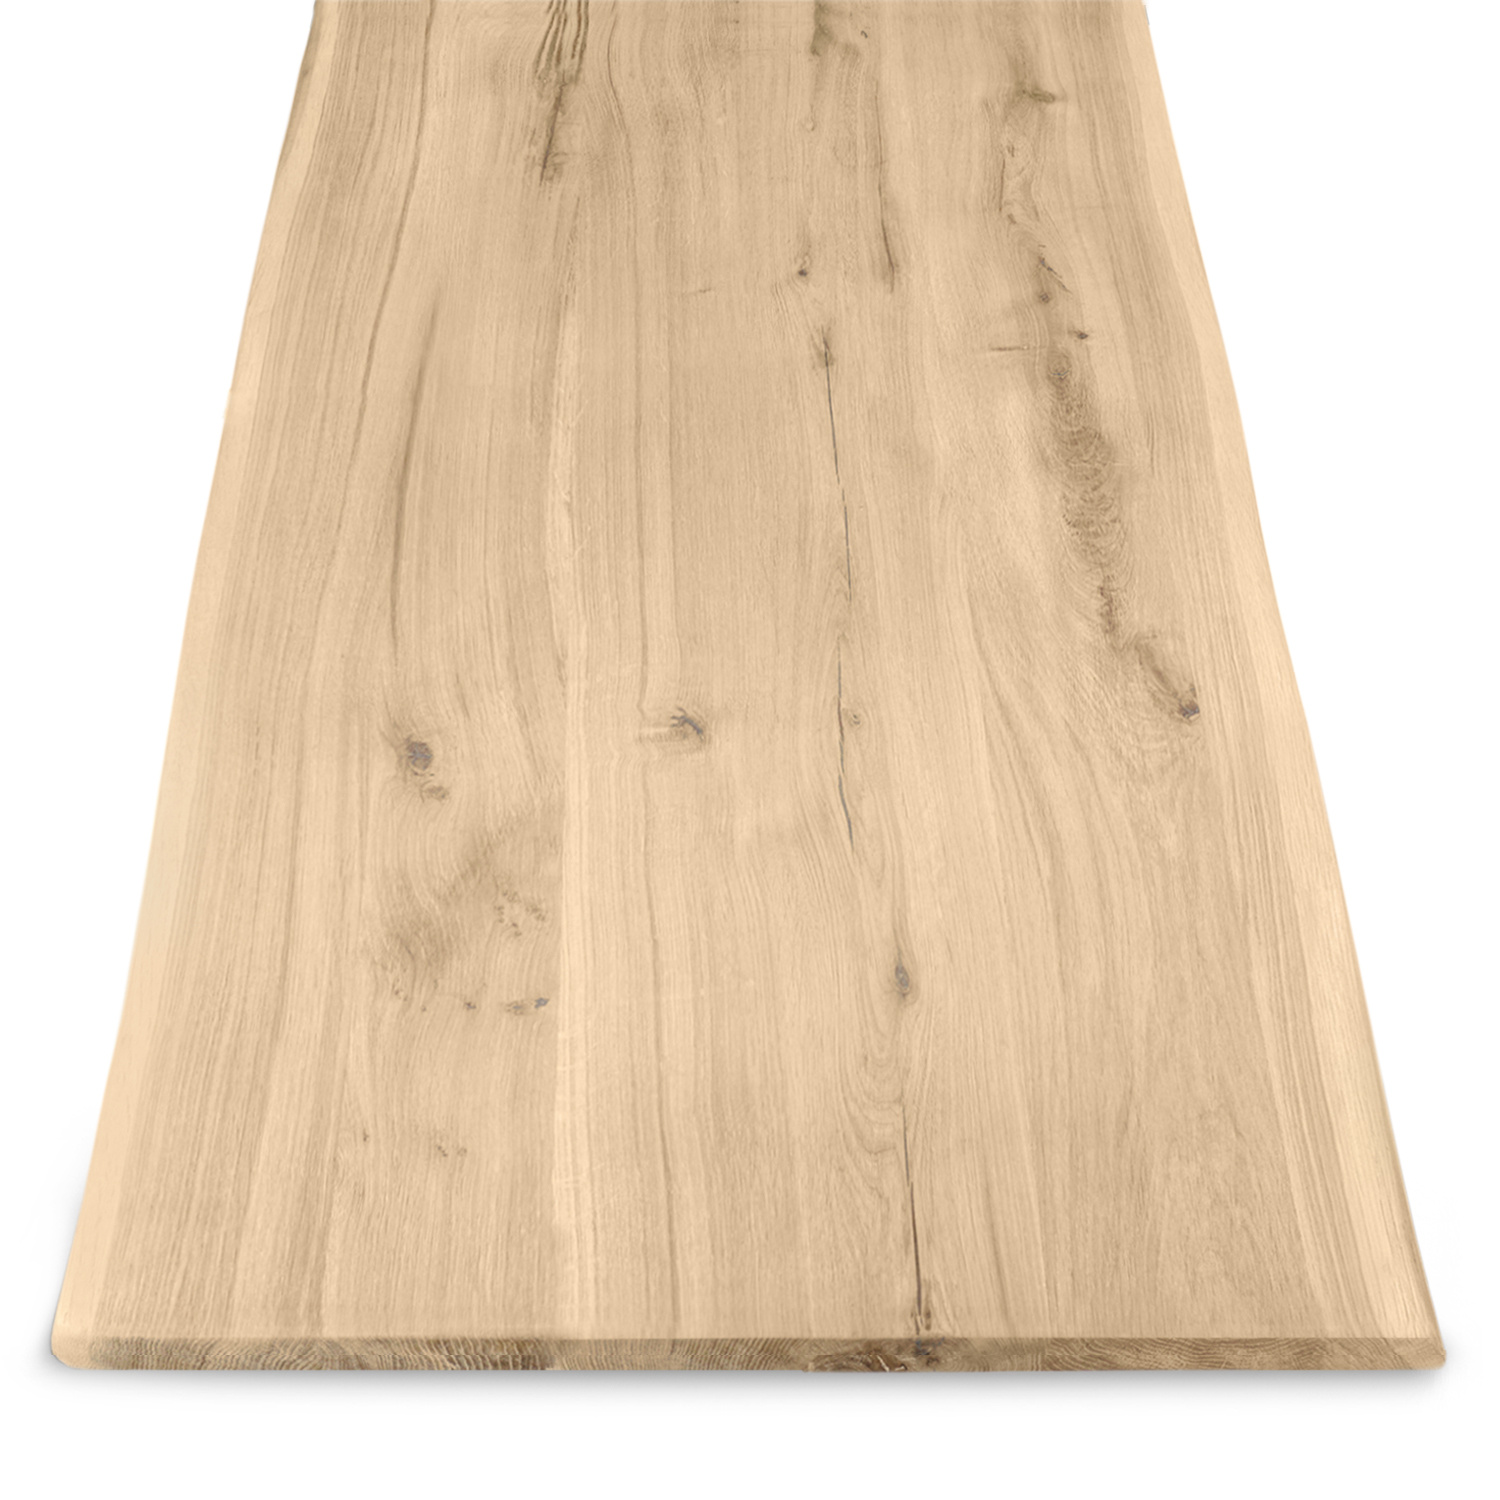  Eiken boomstam tafelblad - 2,5 cm dik (1-laag) - Diverse afmetingen - met boomstam rand / waankant - extra rustiek Europees eikenhout - met extra brede lamellen (circa 14-20 cm) - verlijmd kd 8-12%